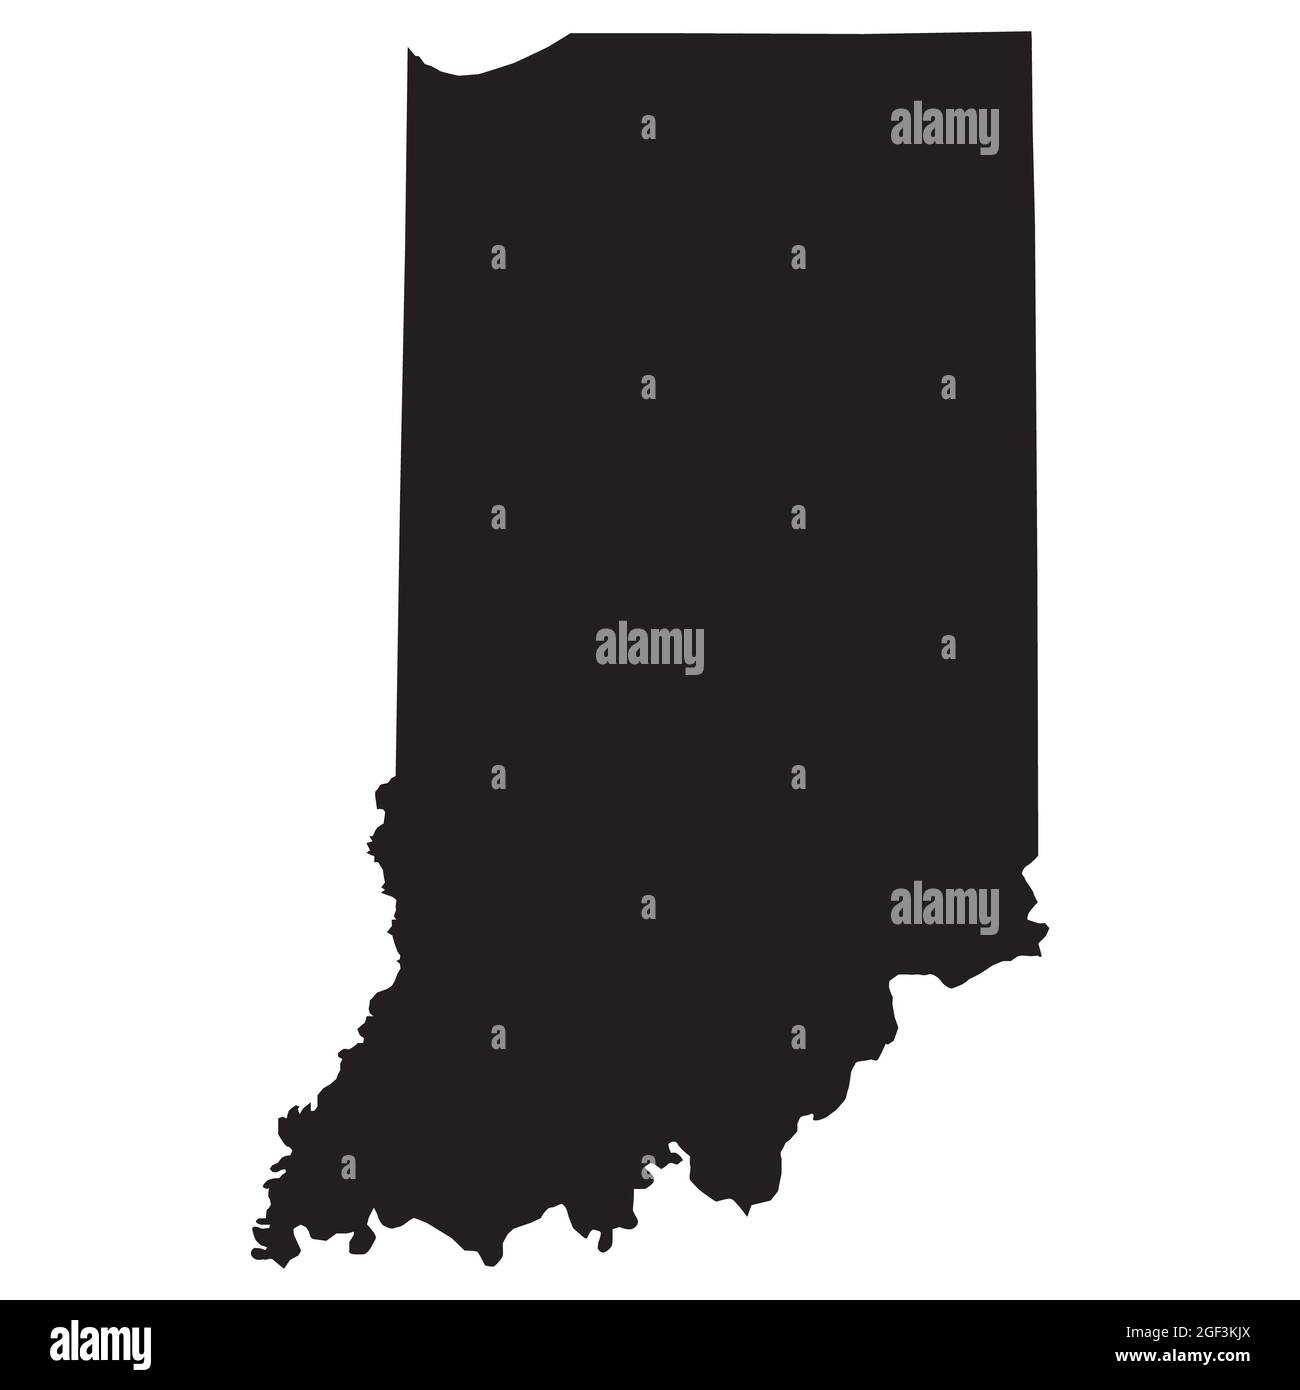 Indiana map on white background. Indiana State map sign. Map of Indiana state of the United States. flat style. Stock Photo